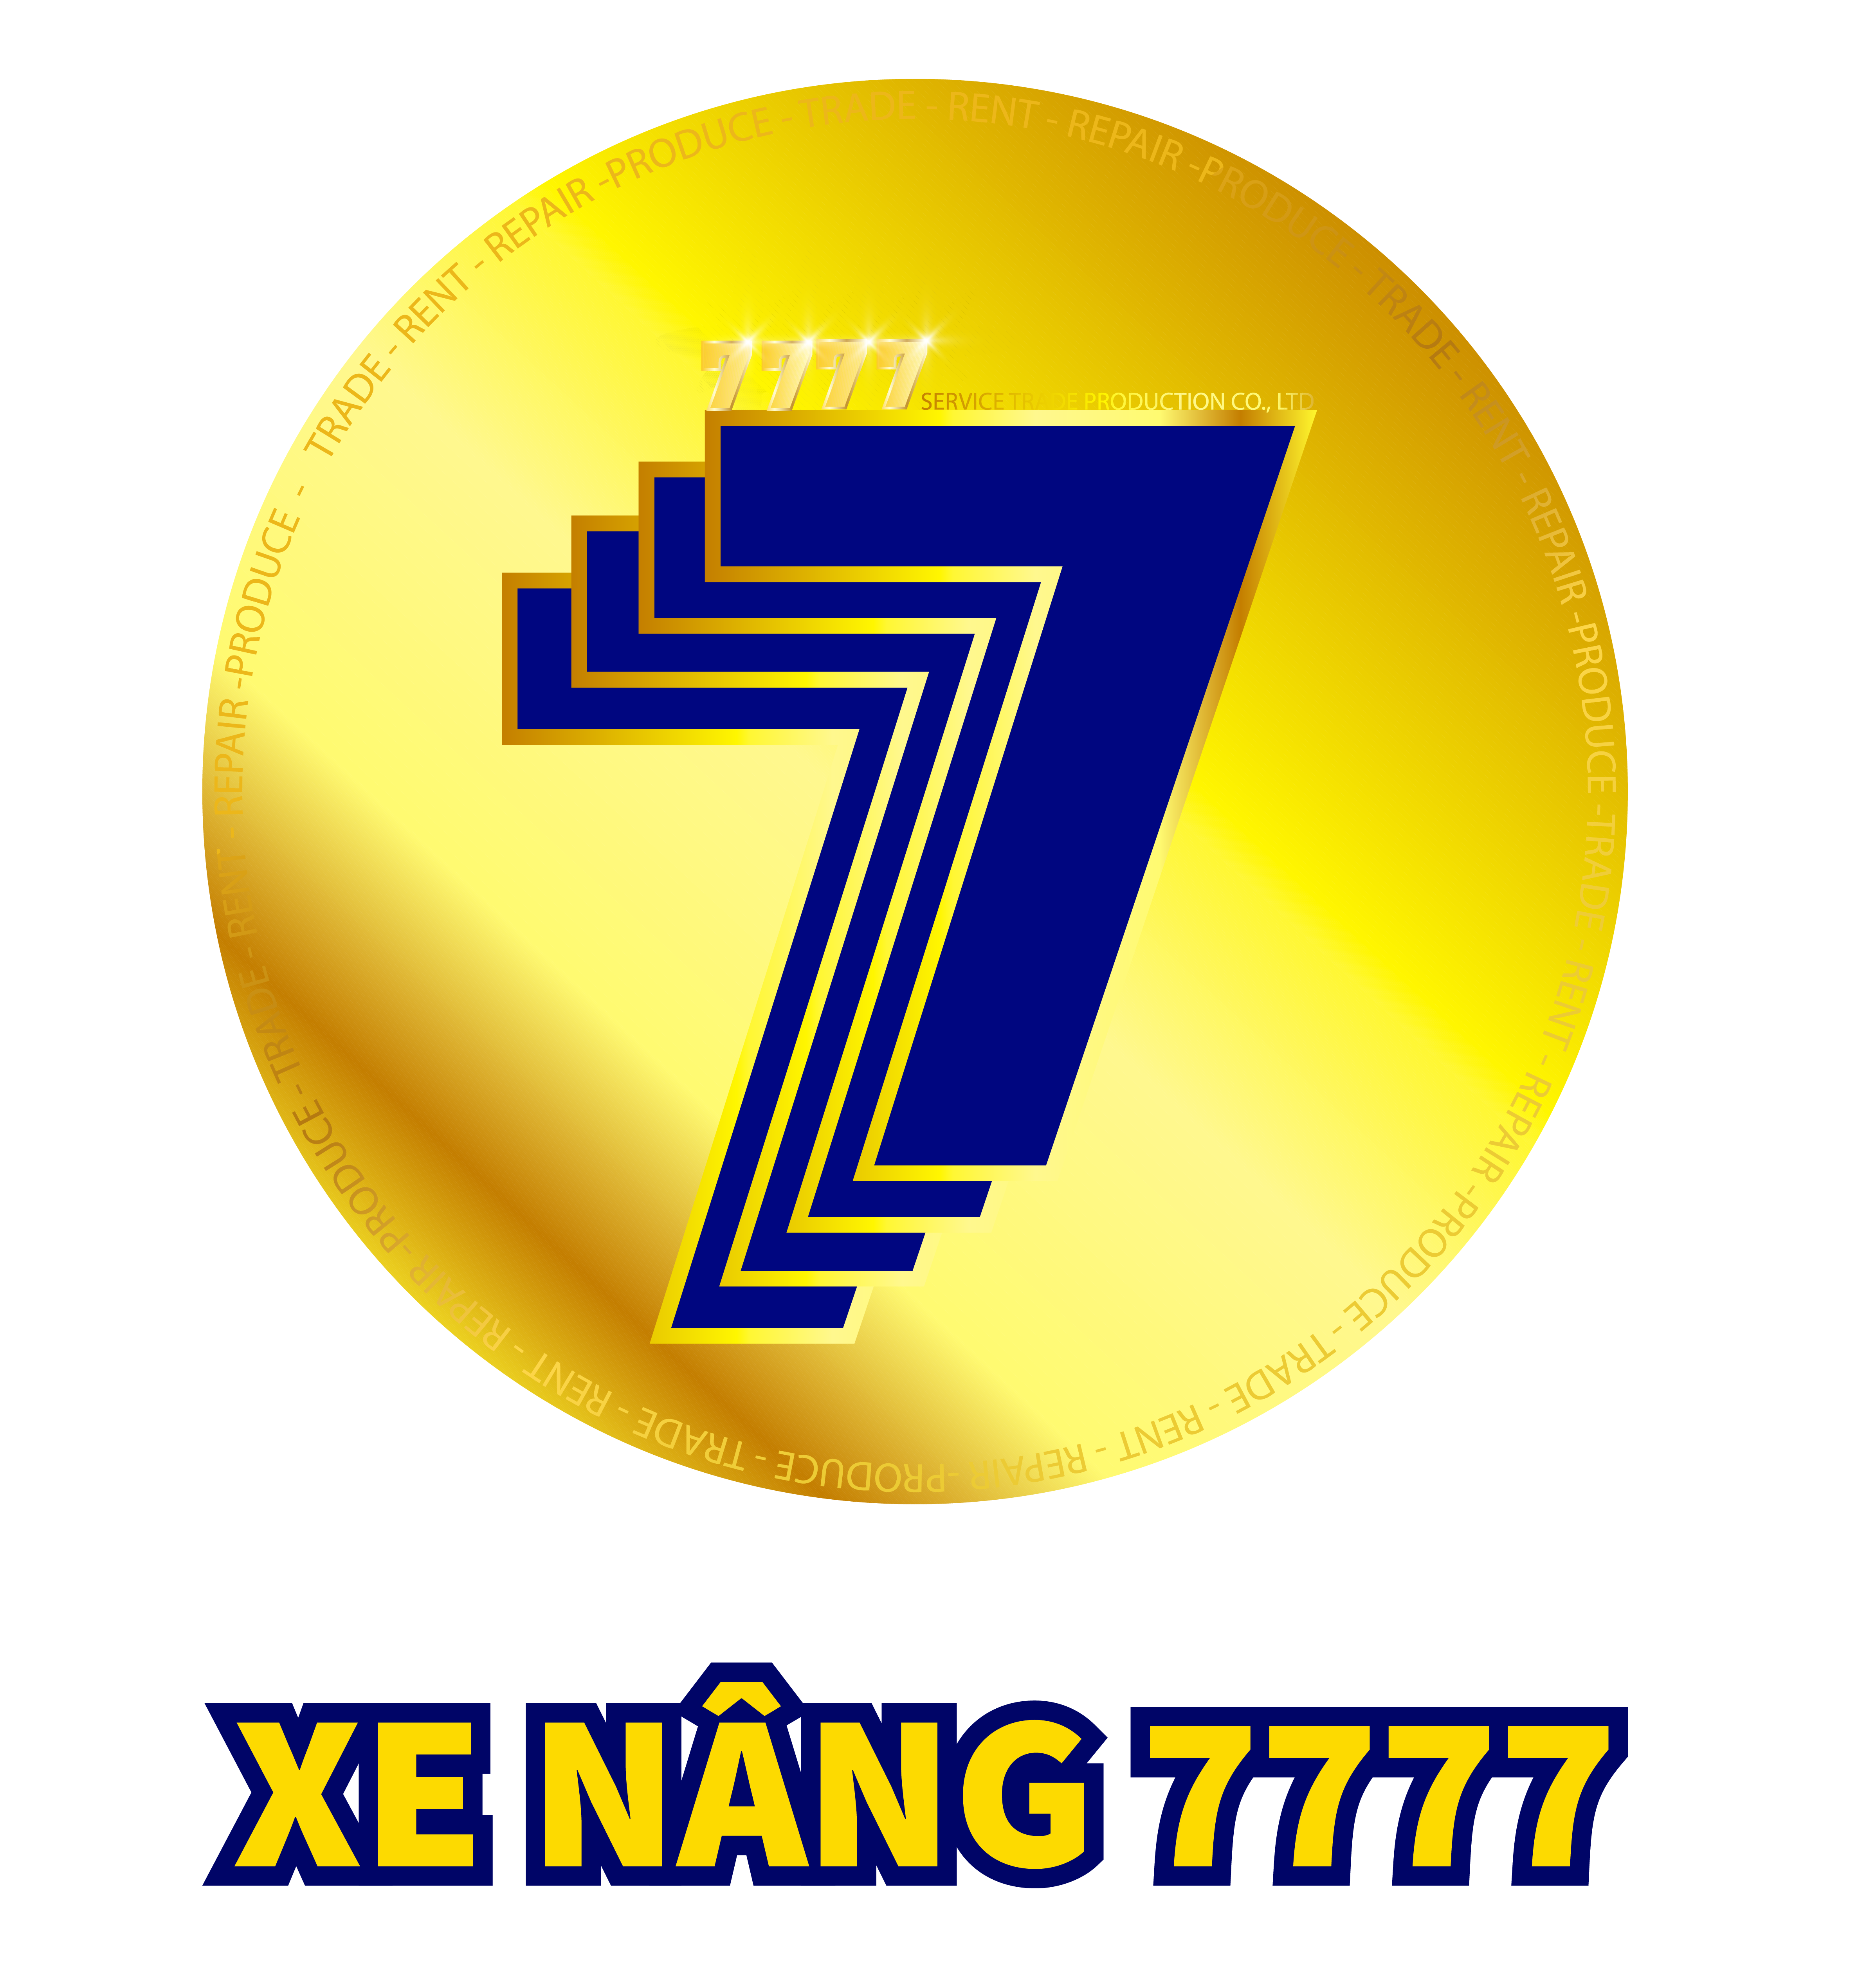 xenang7777.vn